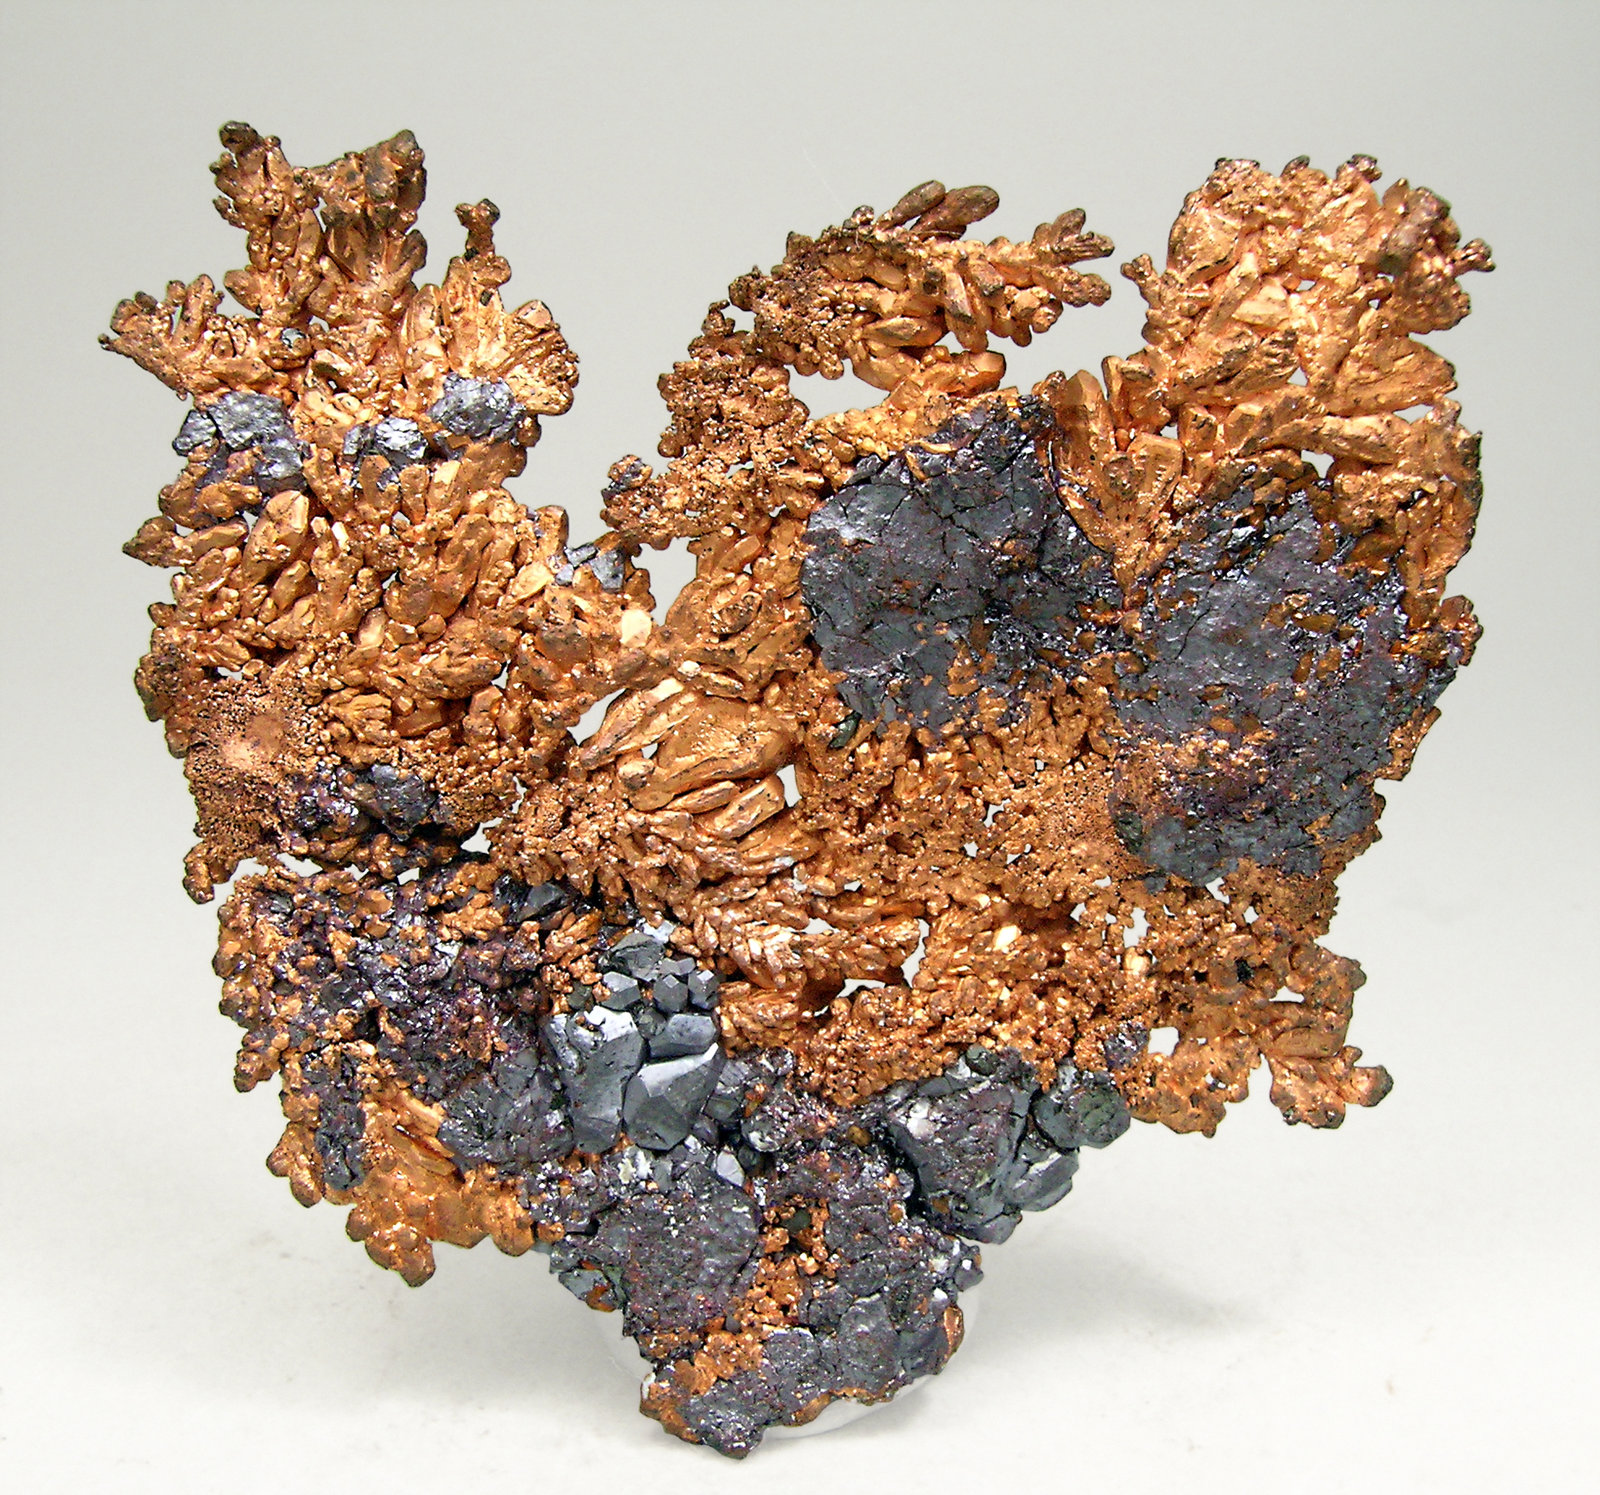 specimens/s_imagesN6/Copper-AV47N6r.jpg